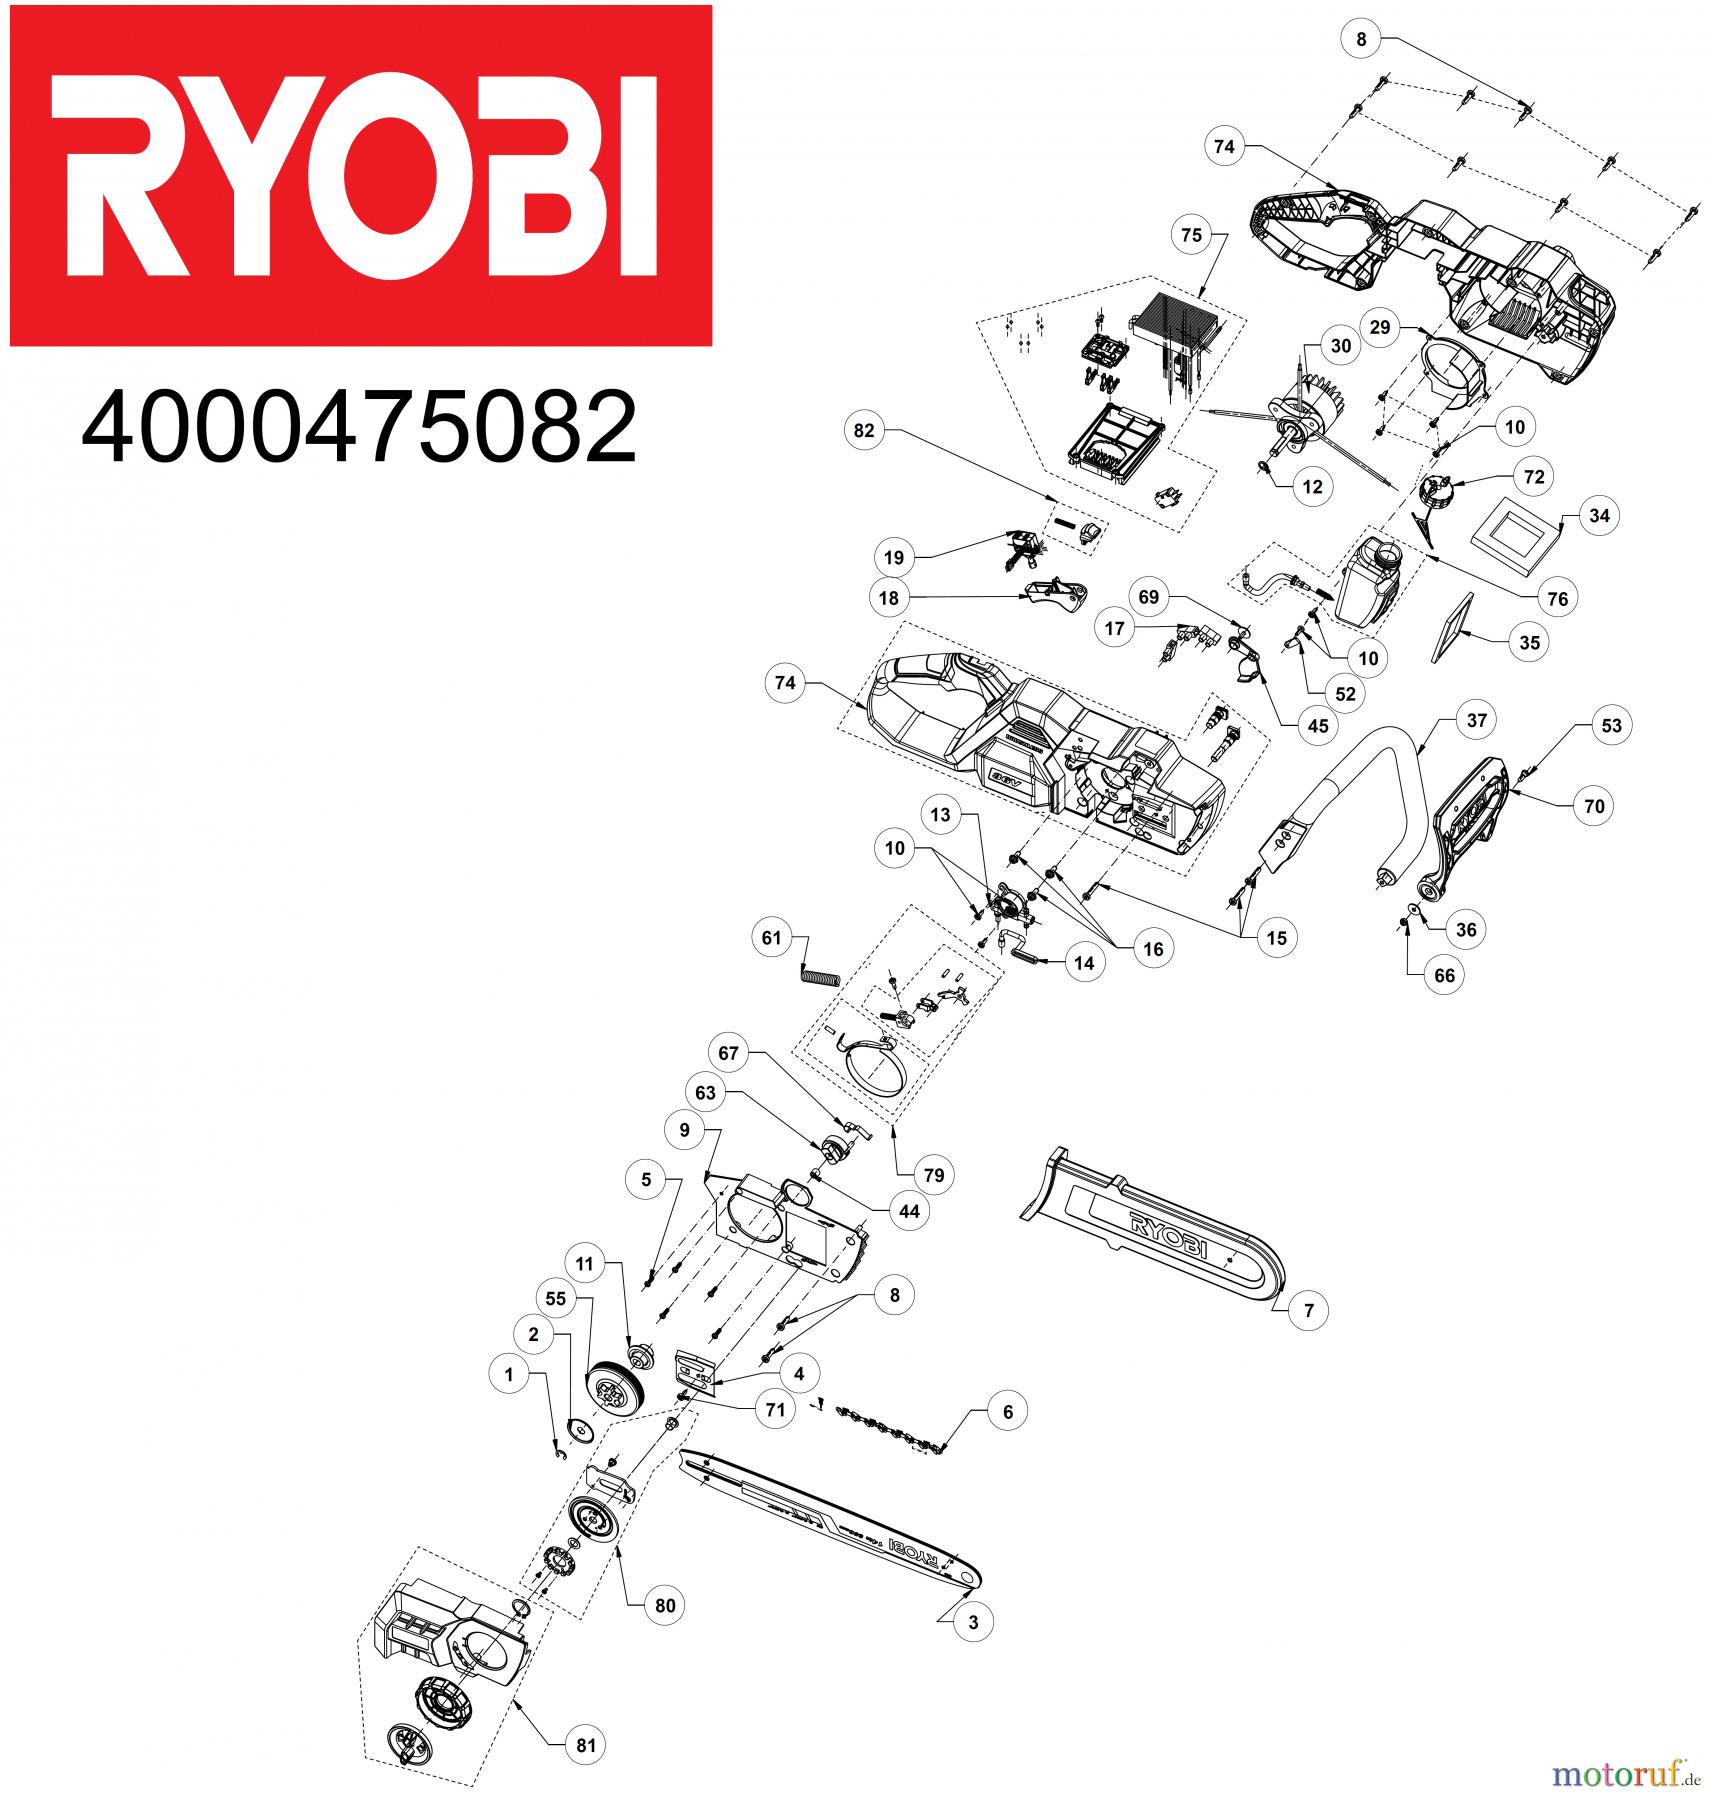  Ryobi Kettensägen Akku RY36CSX35A 36V Akku Kettensäge Bürstenlos Seite 1